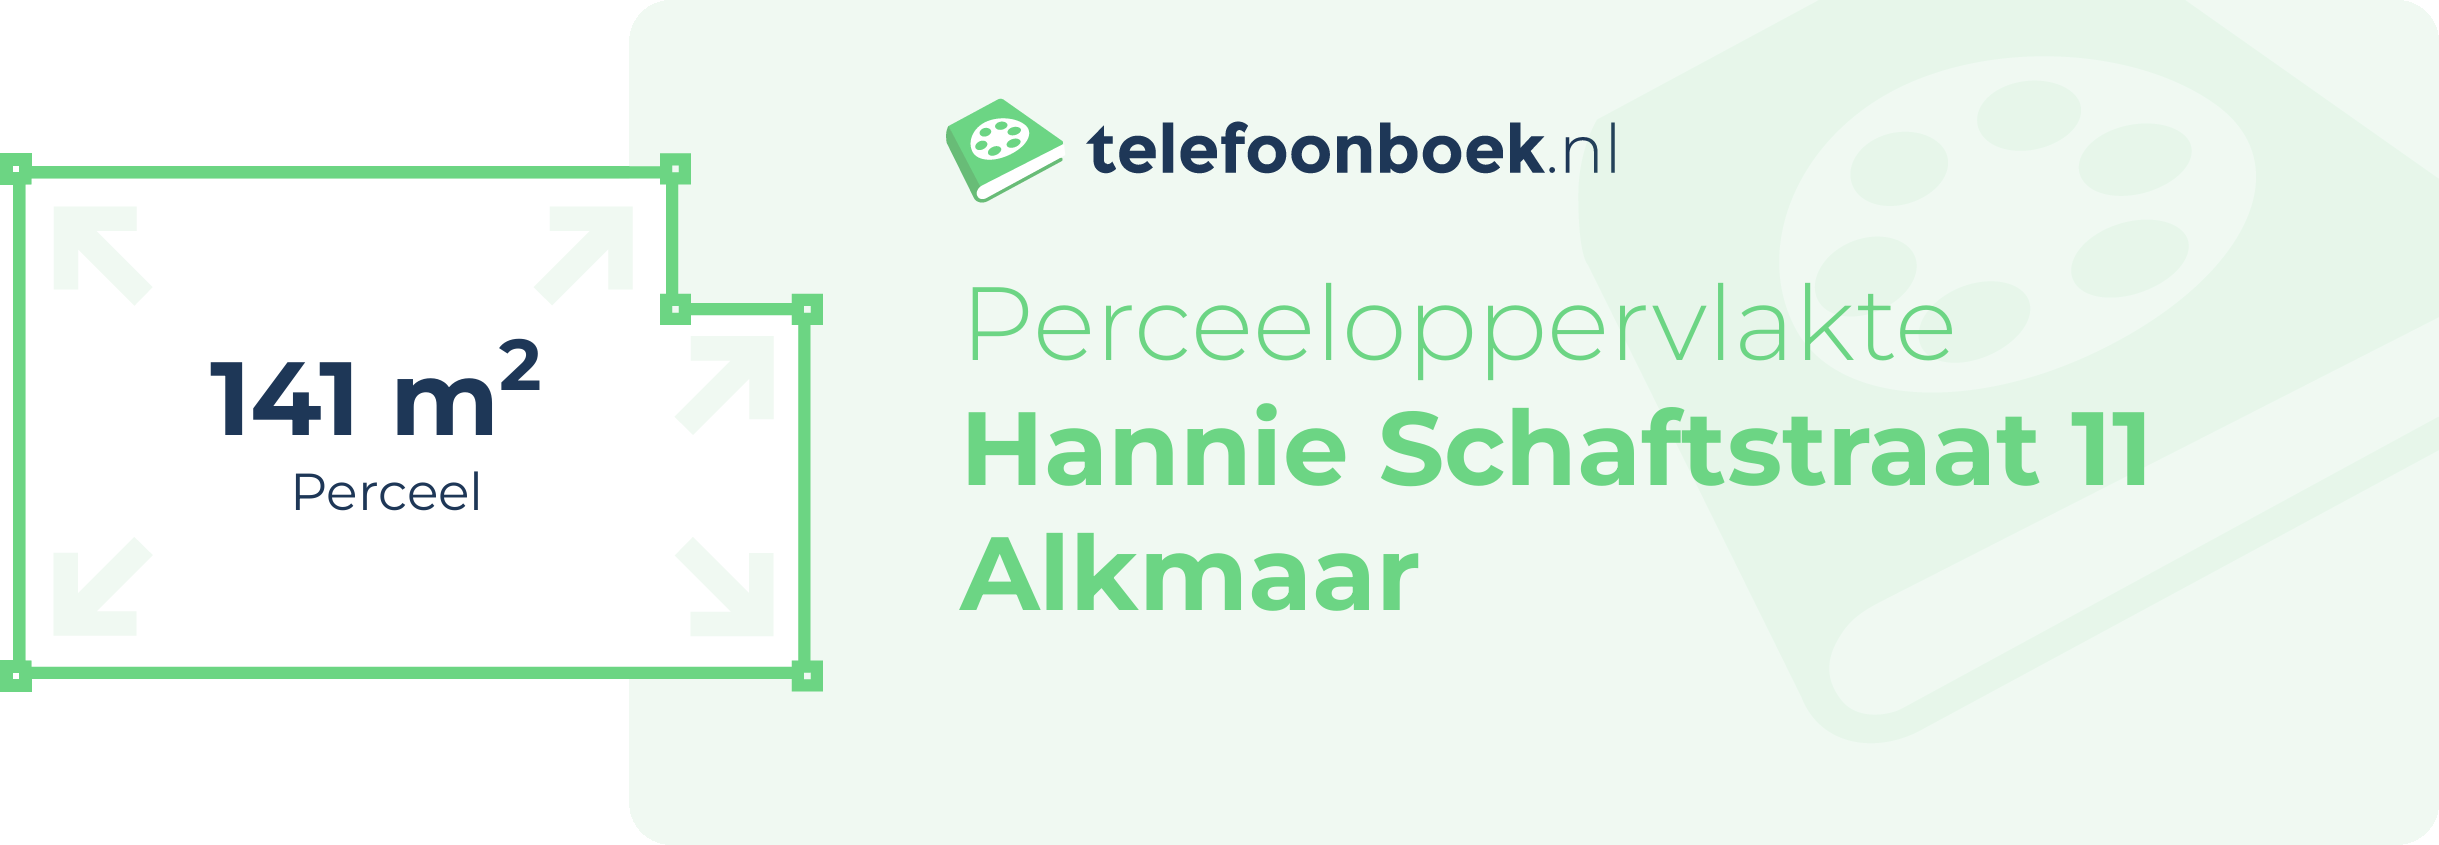 Perceeloppervlakte Hannie Schaftstraat 11 Alkmaar